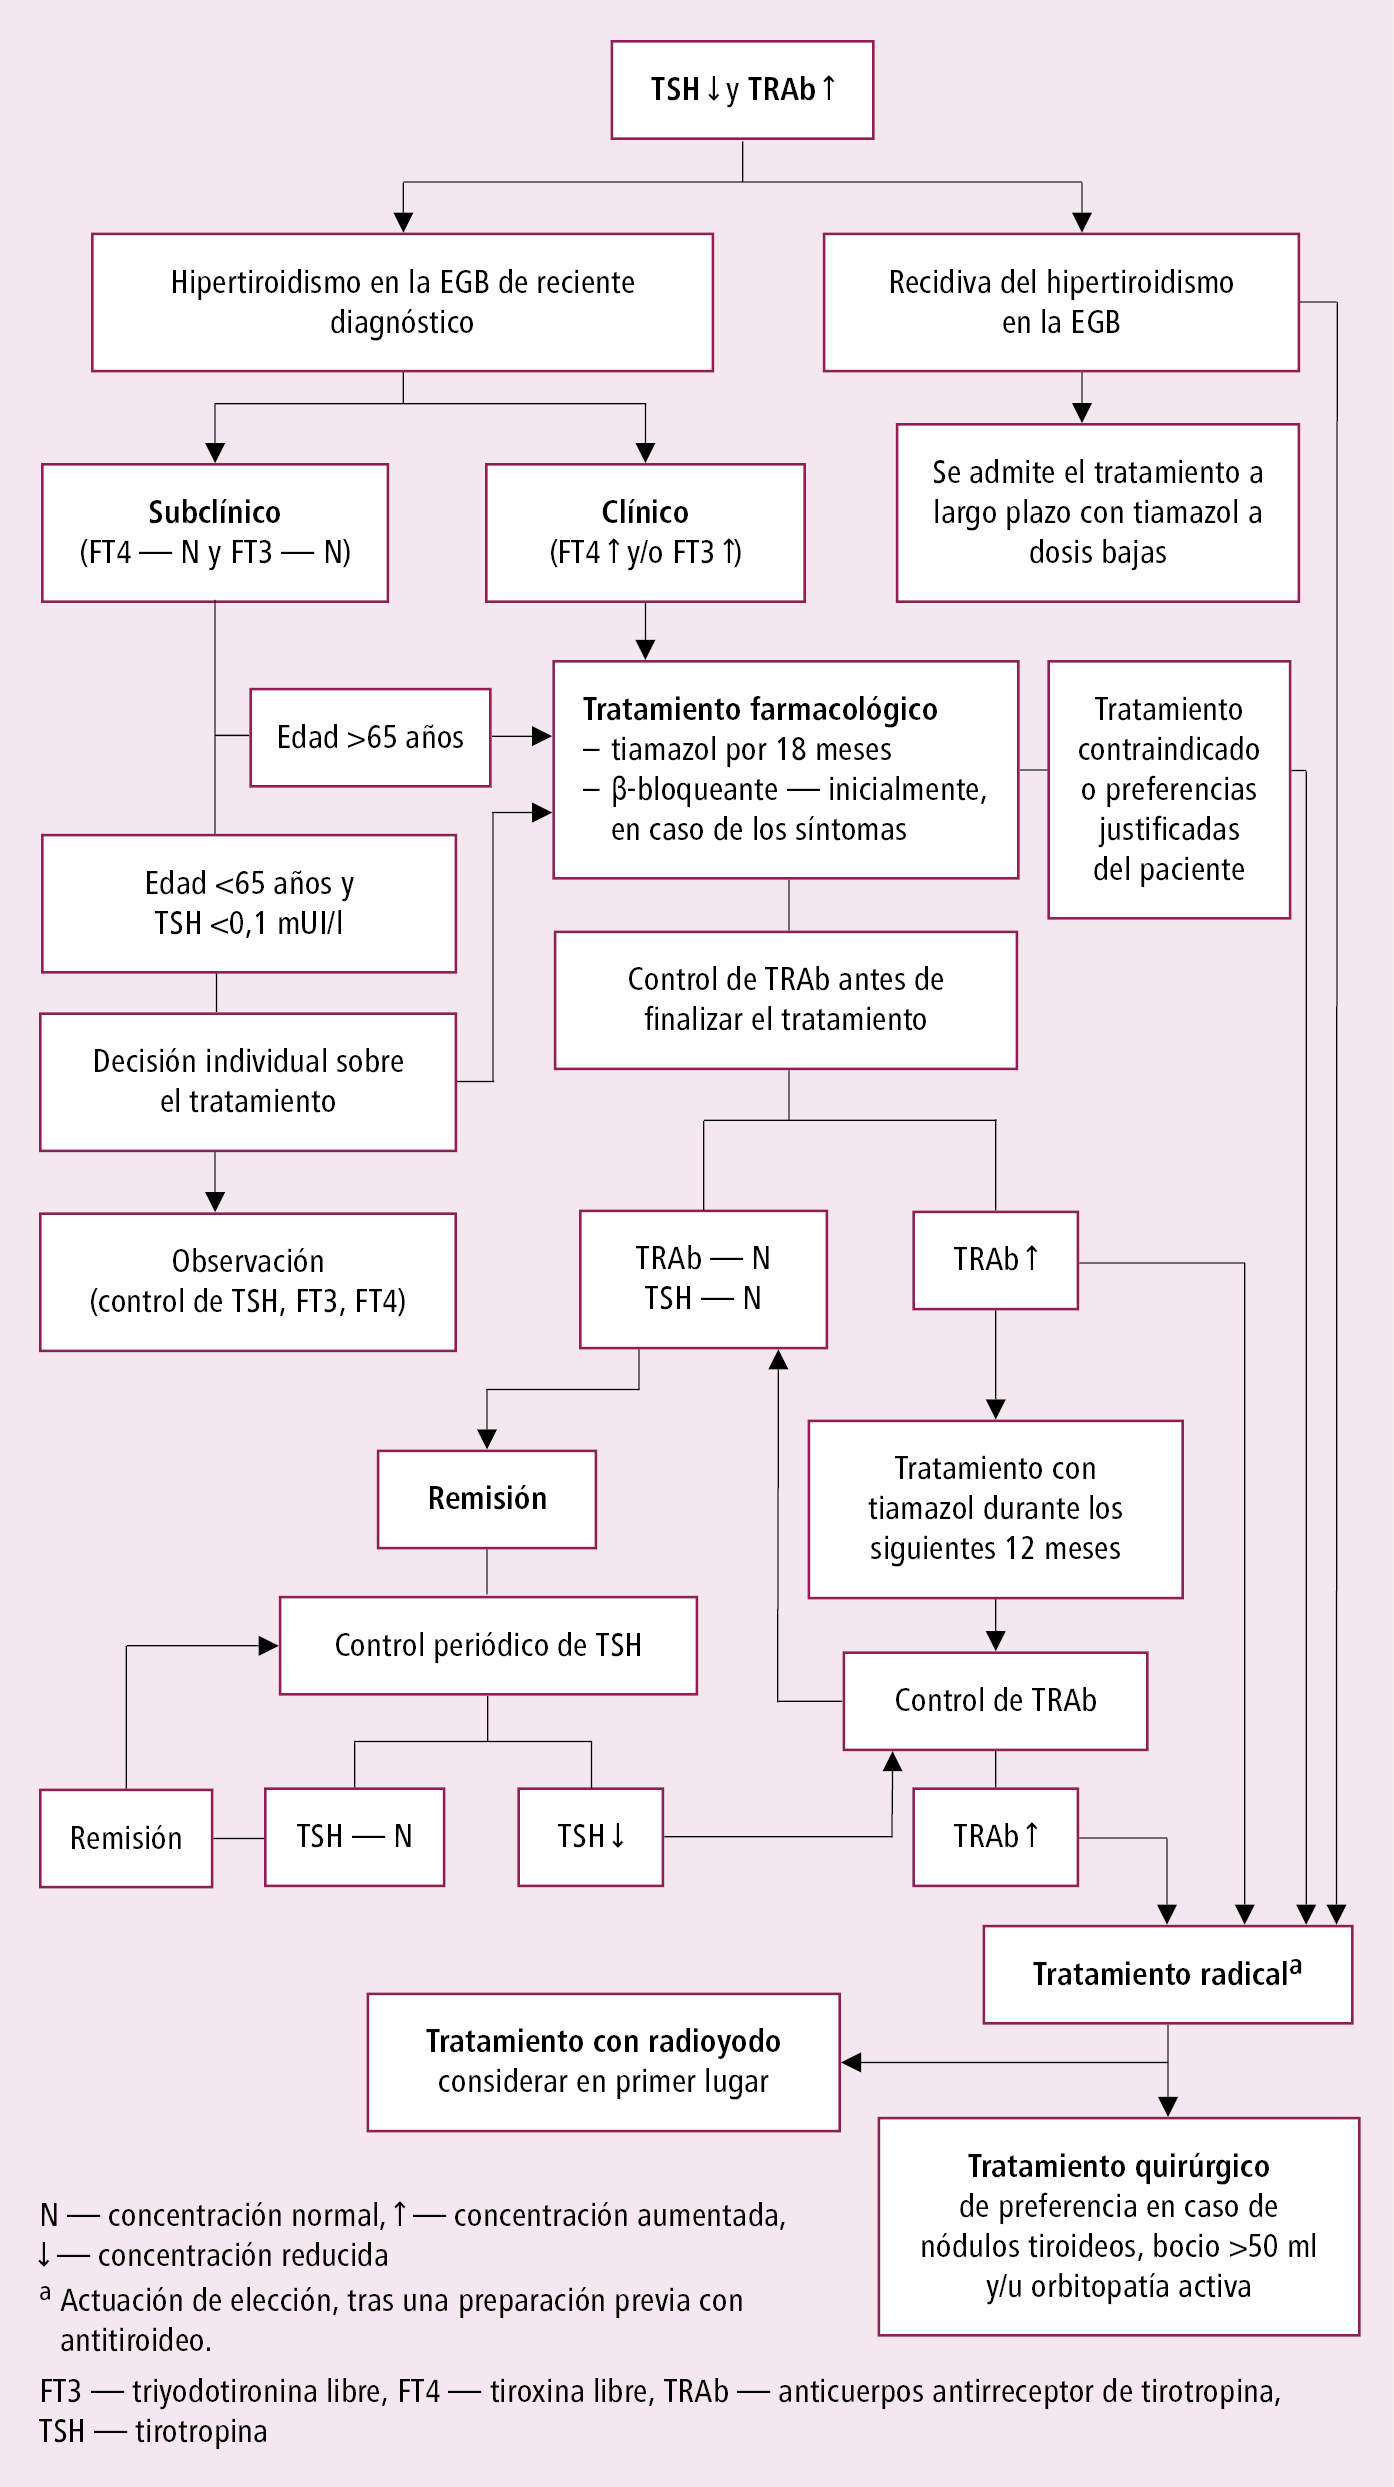    Fig. 9.2-1.  Algoritmo simplificado del tratamiento del hipertiroidismo en el curso de la enfermedad de Graves-Basedow (EGB) según las guías de la ETA (2018; modificado) 